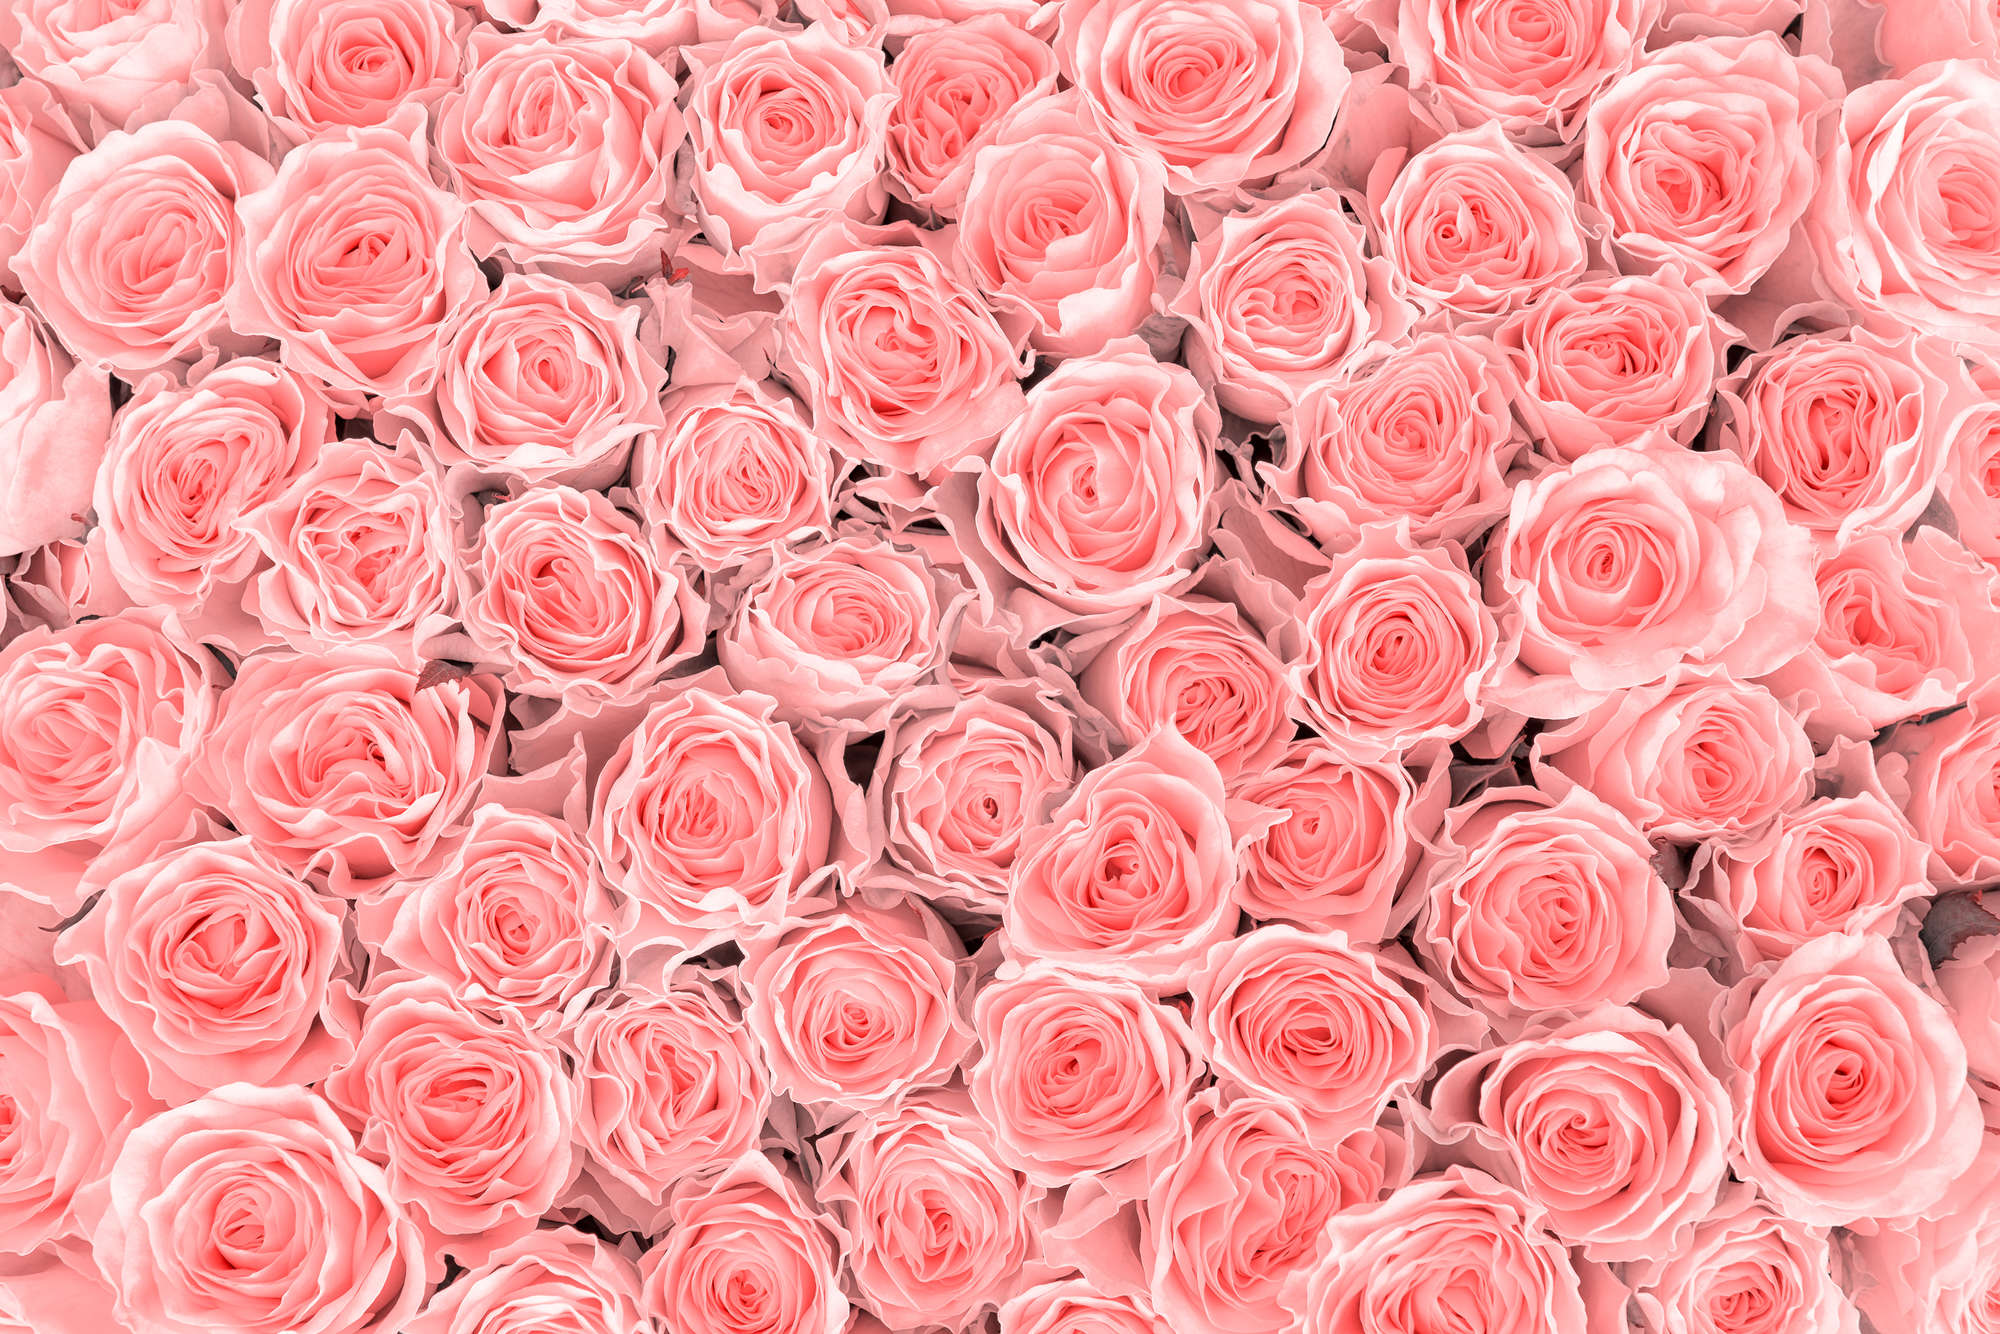             Papier peint végétal roses roses sur nacre intissé lisse
        